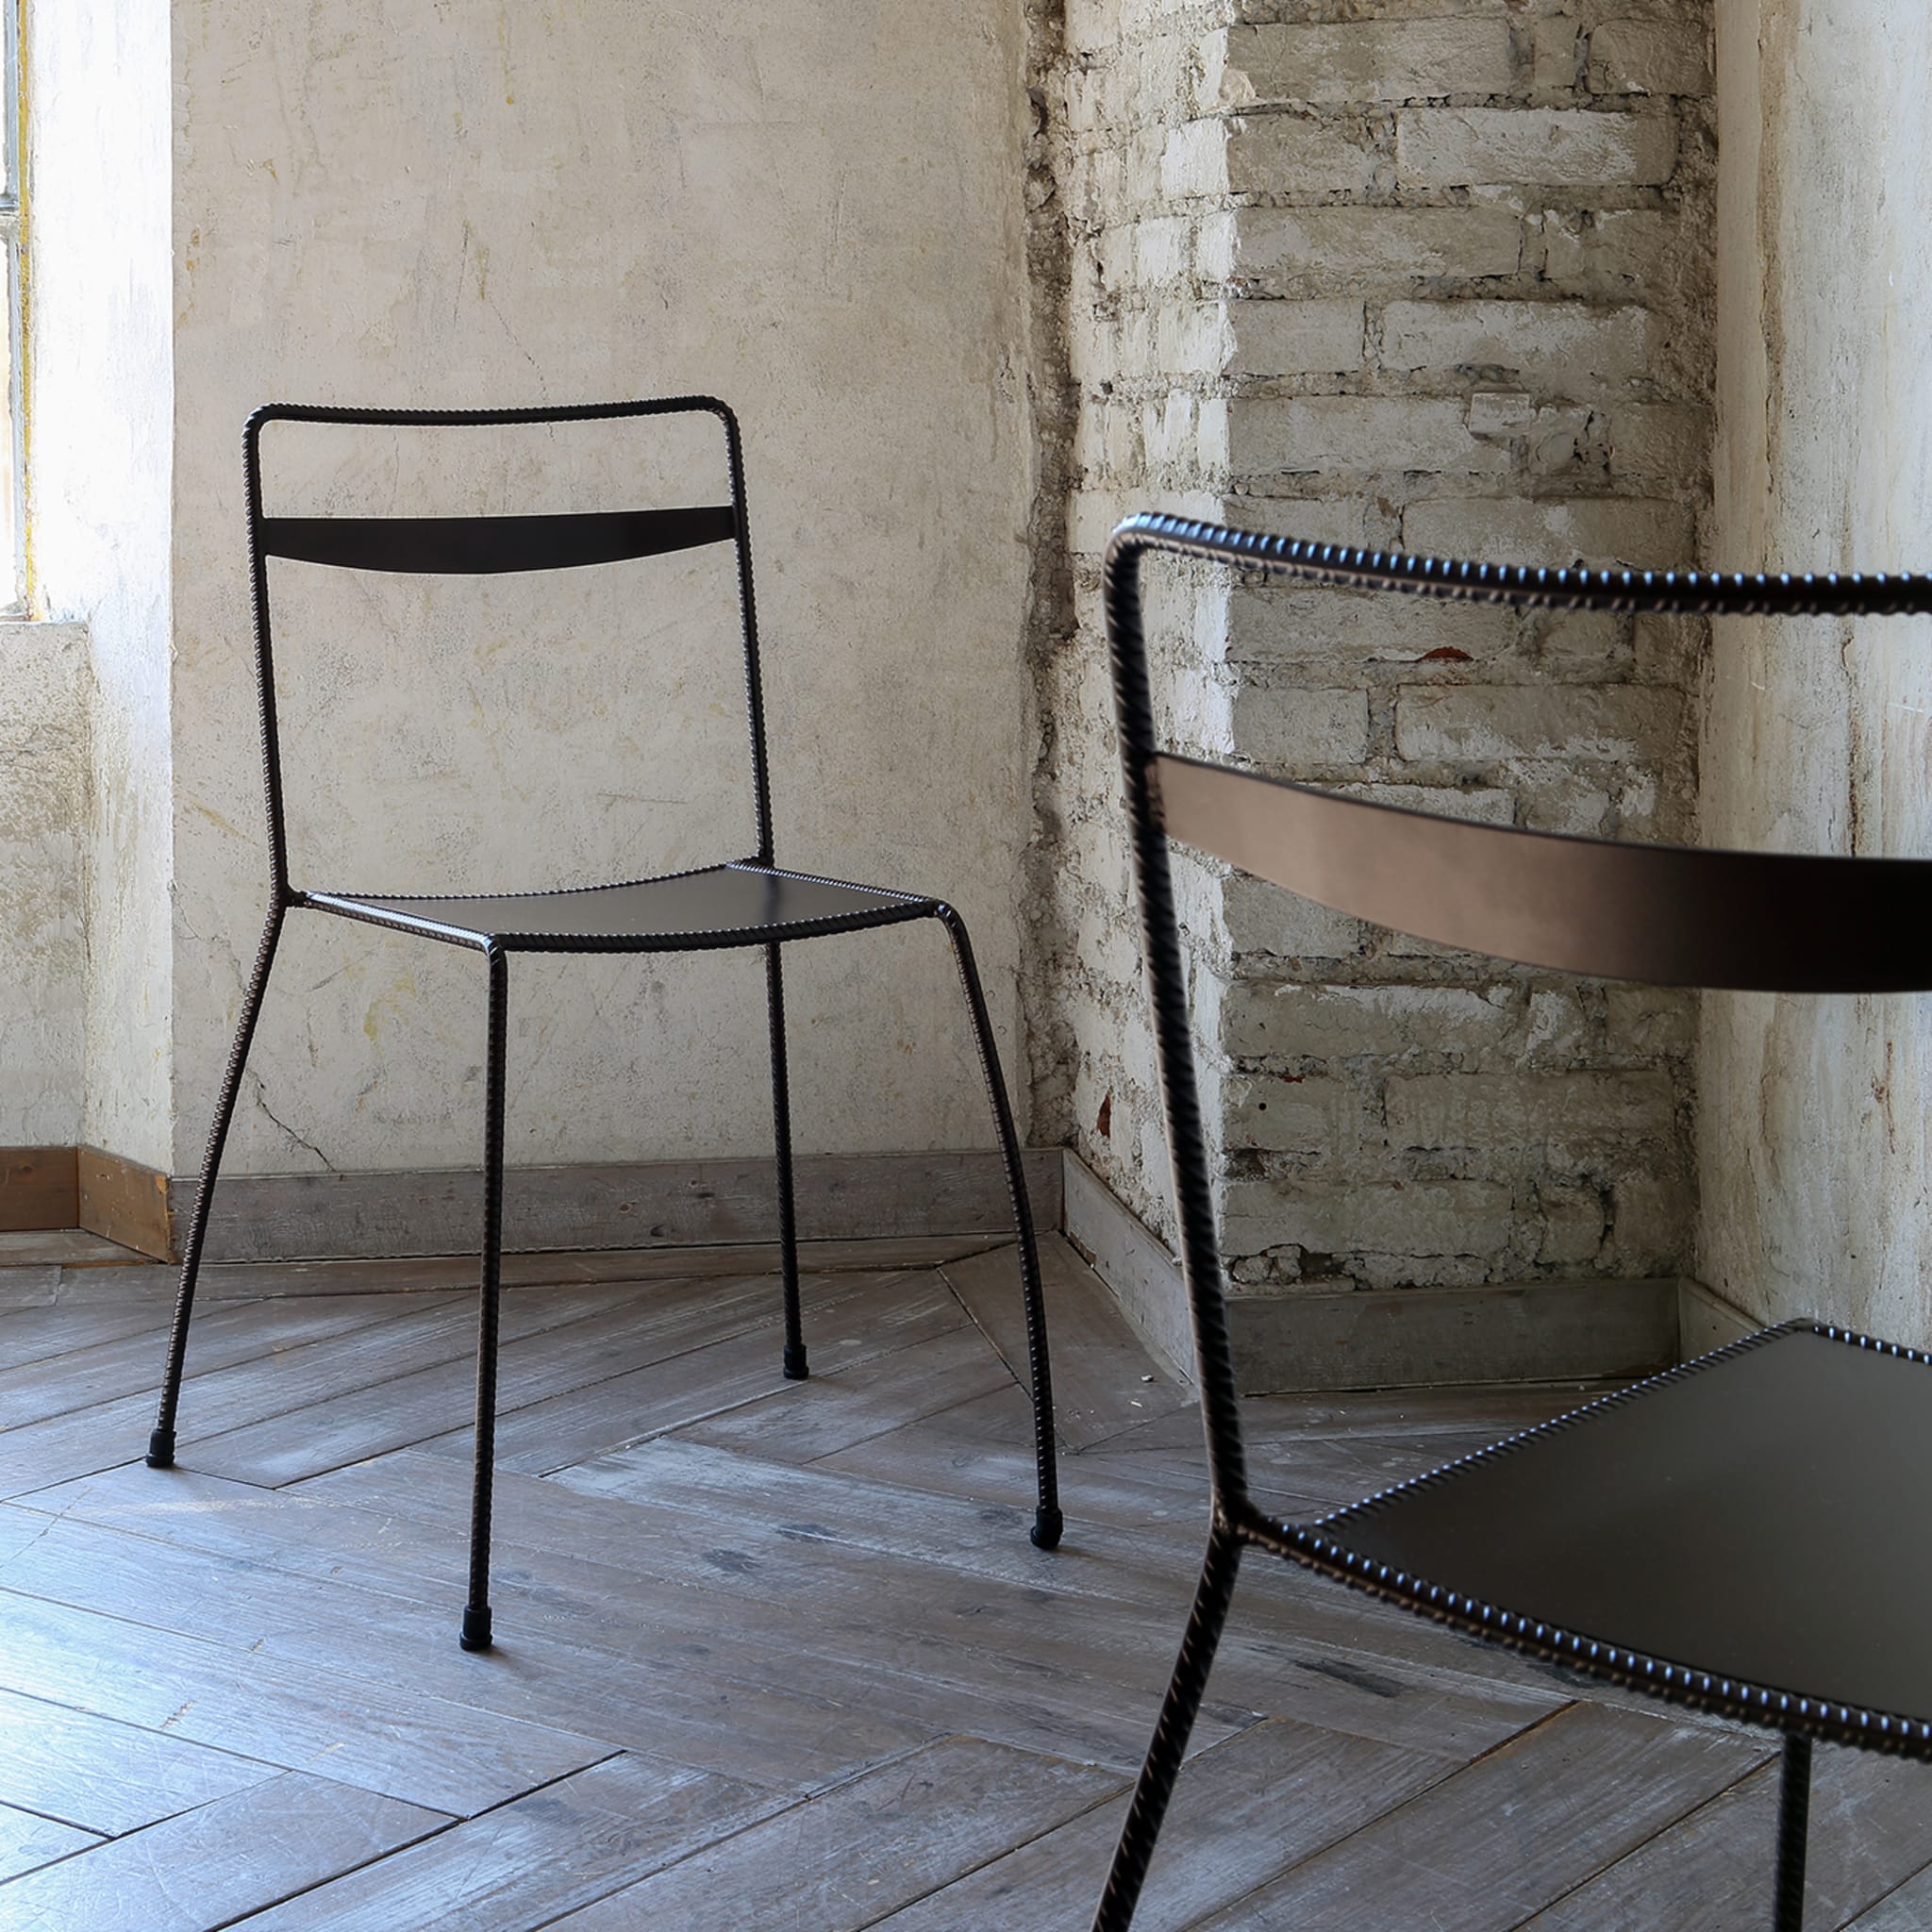 Tondella Brown Chair by Maurizio Peregalli - Alternative view 2